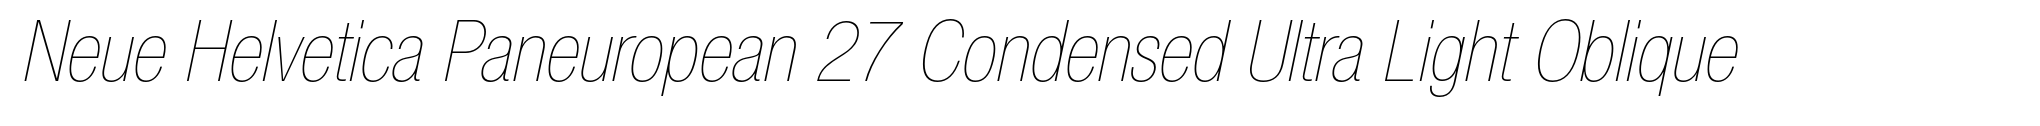 Neue Helvetica Paneuropean 27 Condensed Ultra Light Oblique image